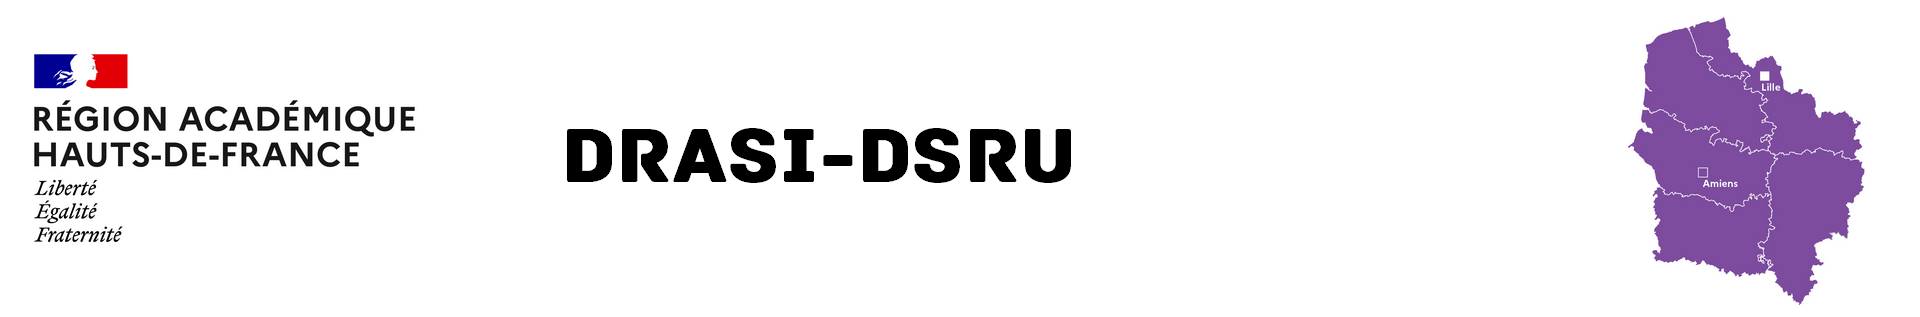 Bannière DRASI-DSRU